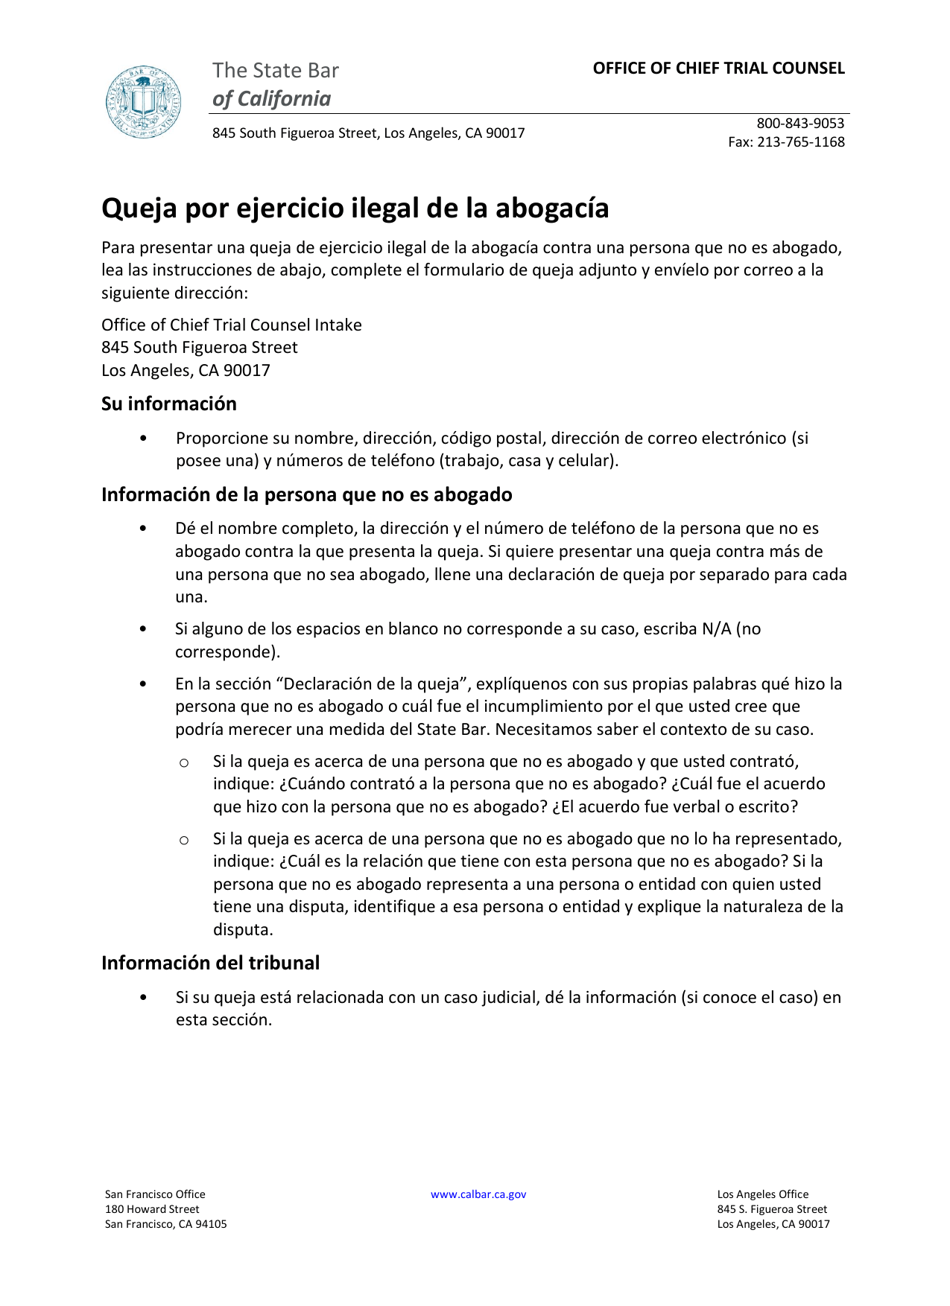 Formulario De Queja Por Ejercicio Ilegal De La Abogacia - California (Spanish), Page 1